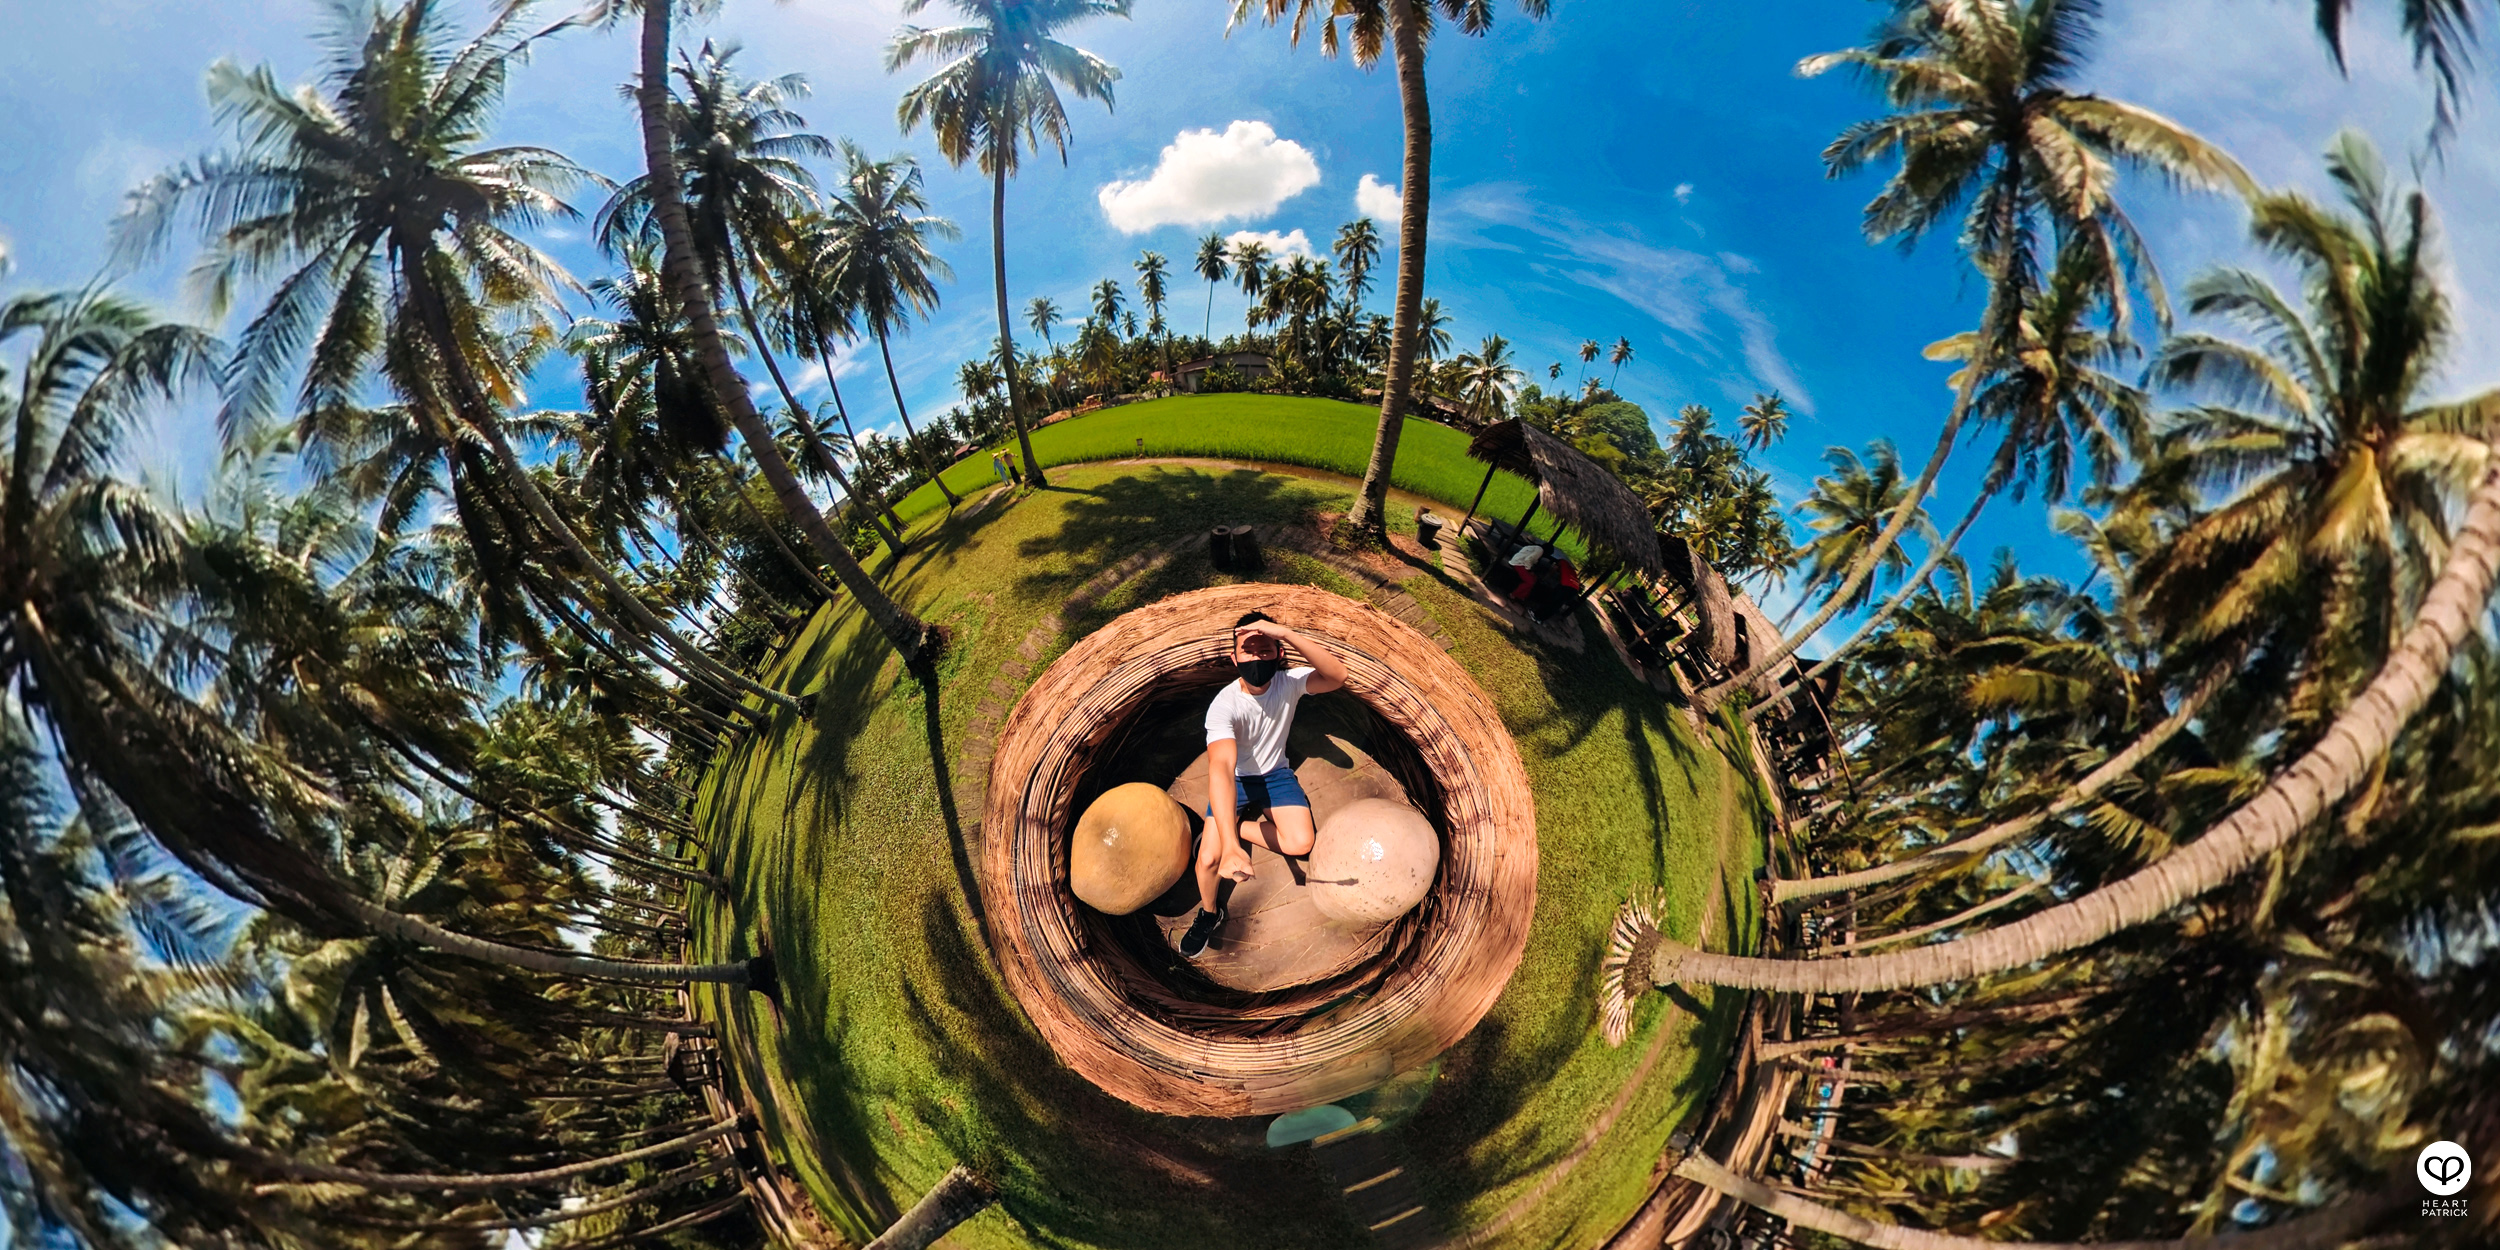 heartpatrick urban exploring kampung agong penang paddy field coconut trees